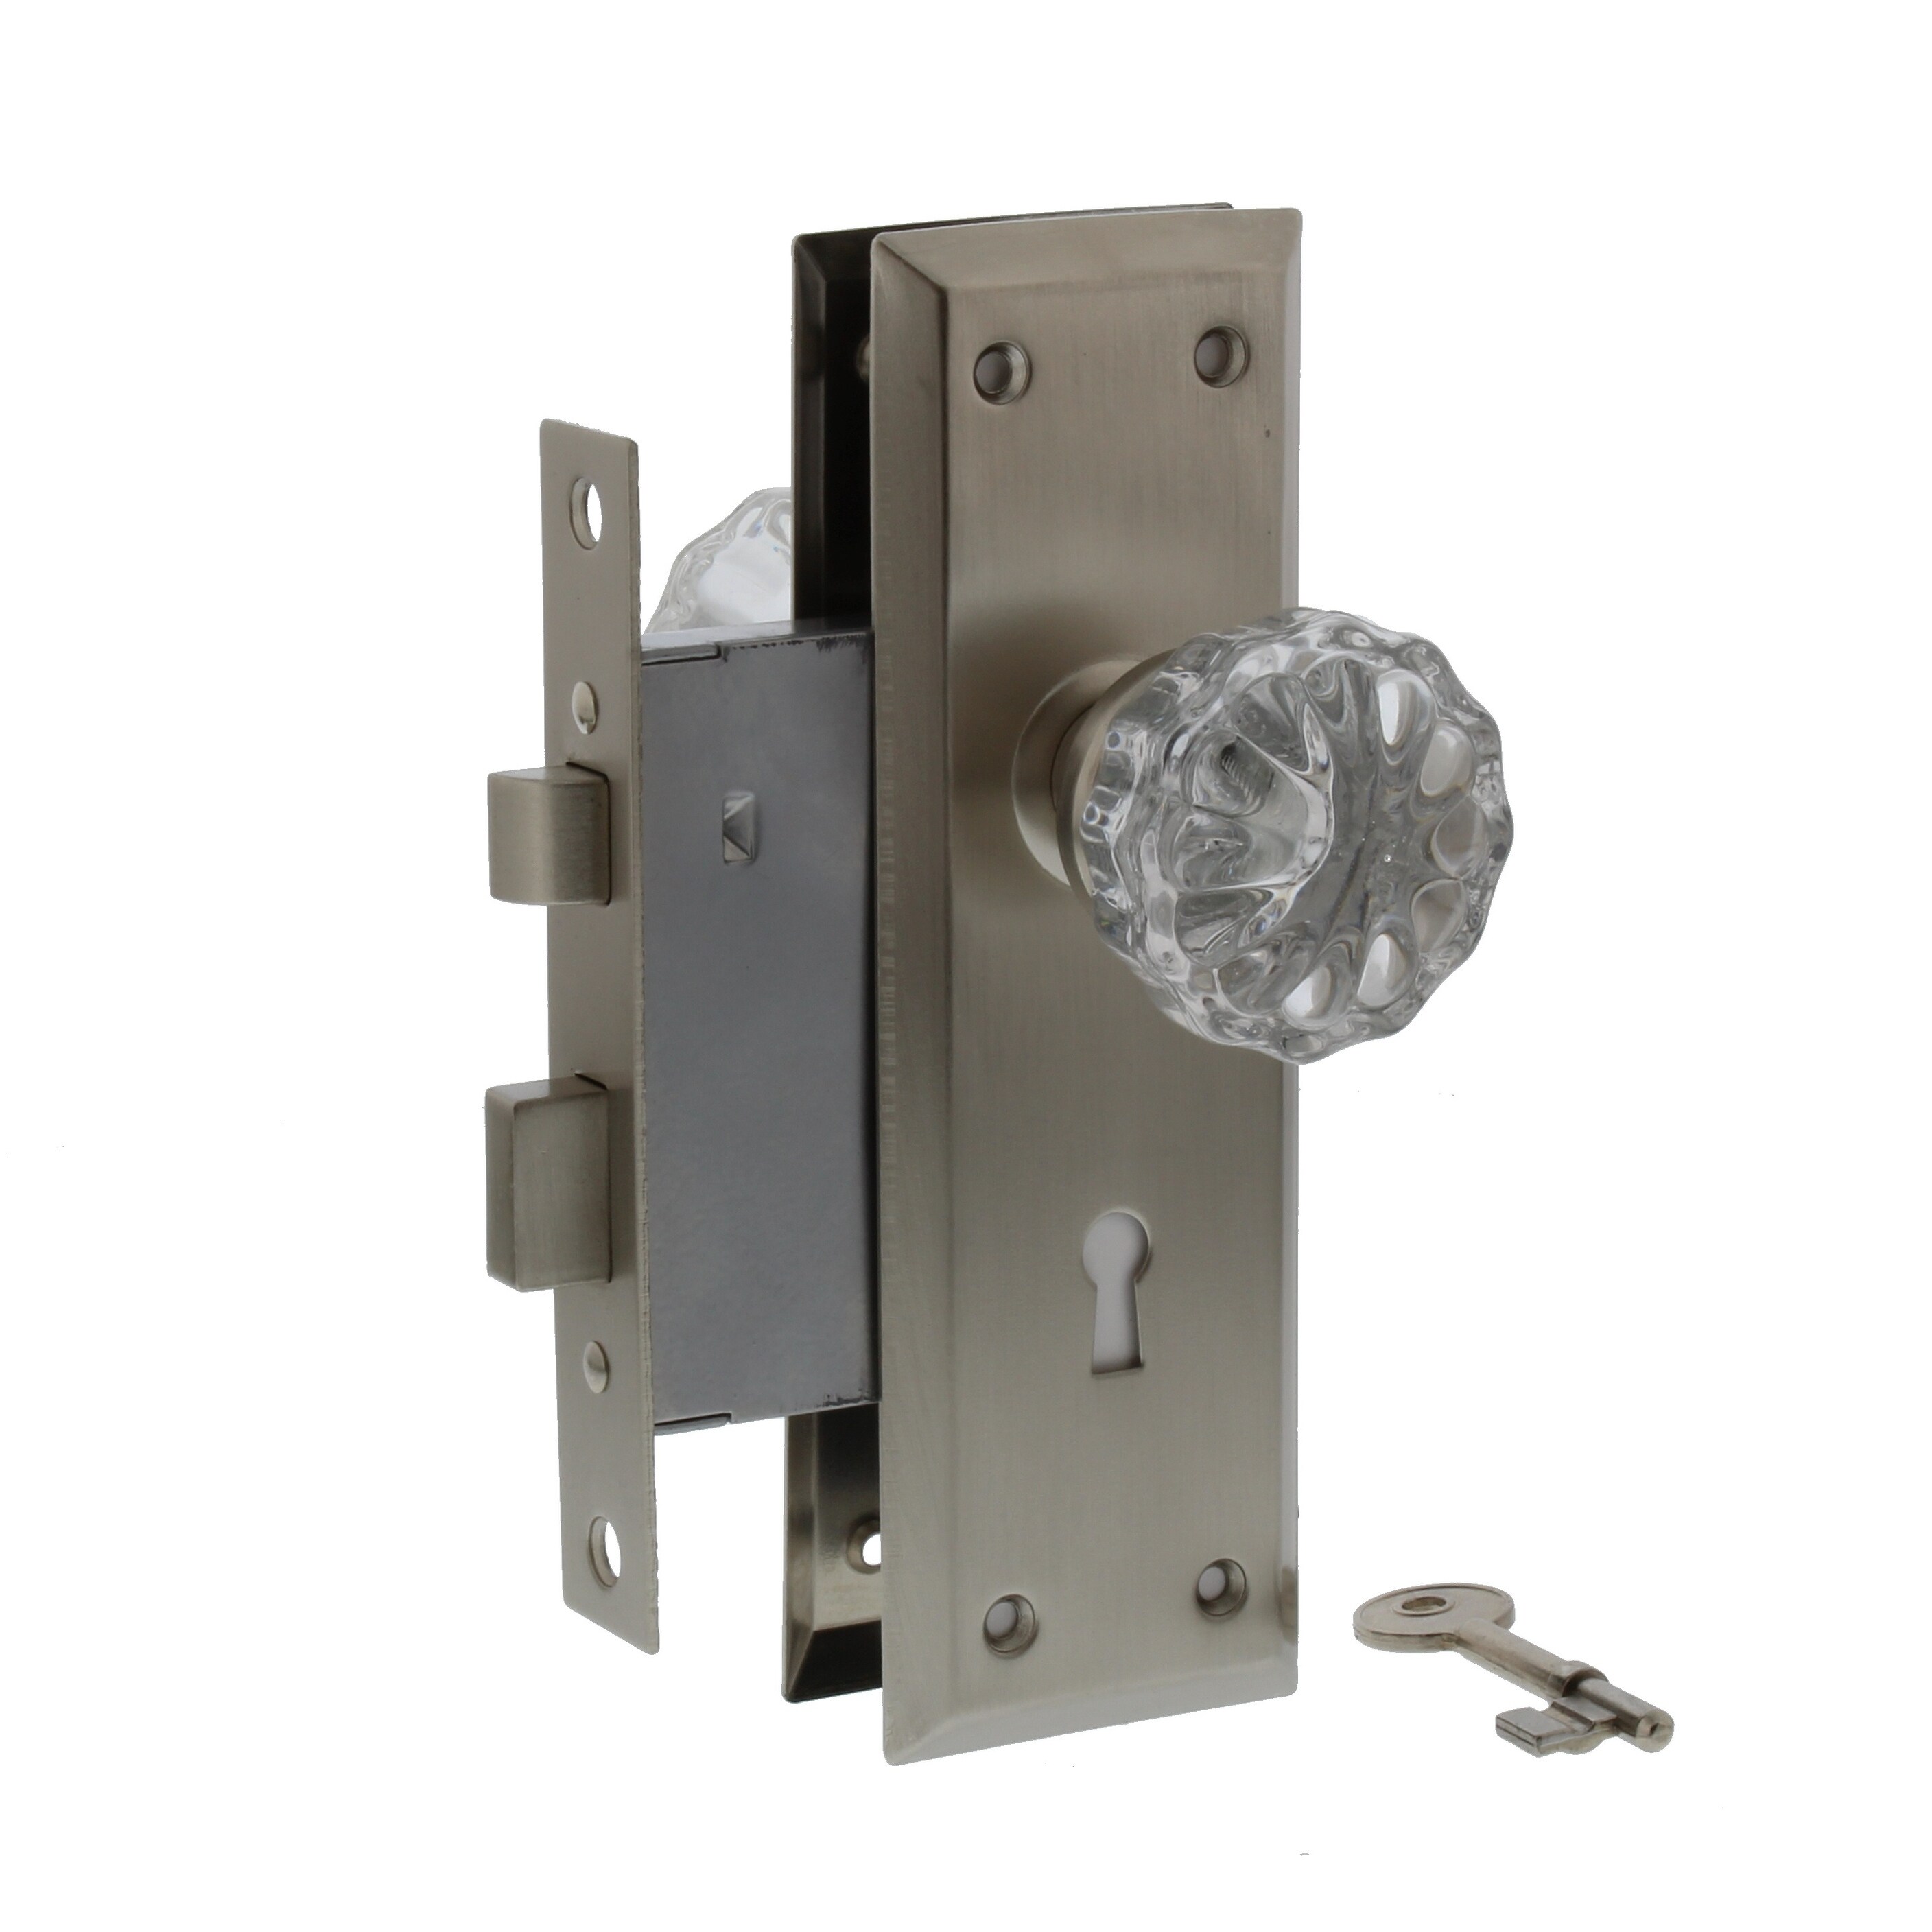 door handle lock and key